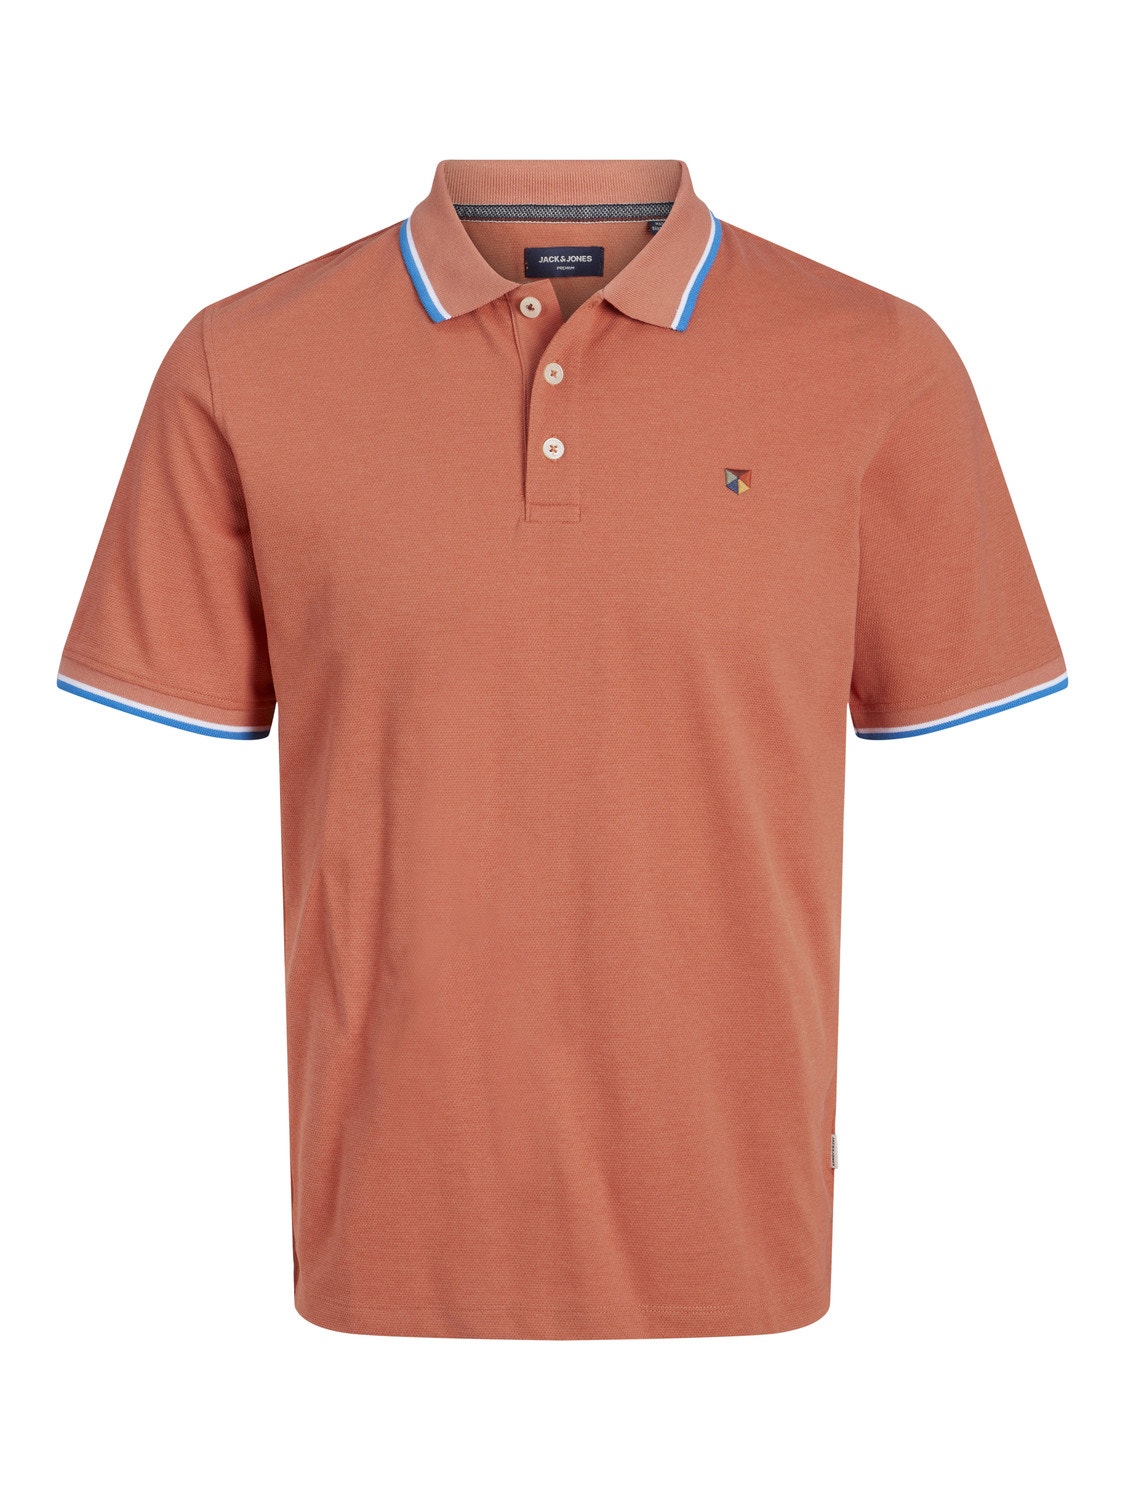 Jack & Jones Enfärgat Polo T-shirt -Apricot Brandy - 12169064